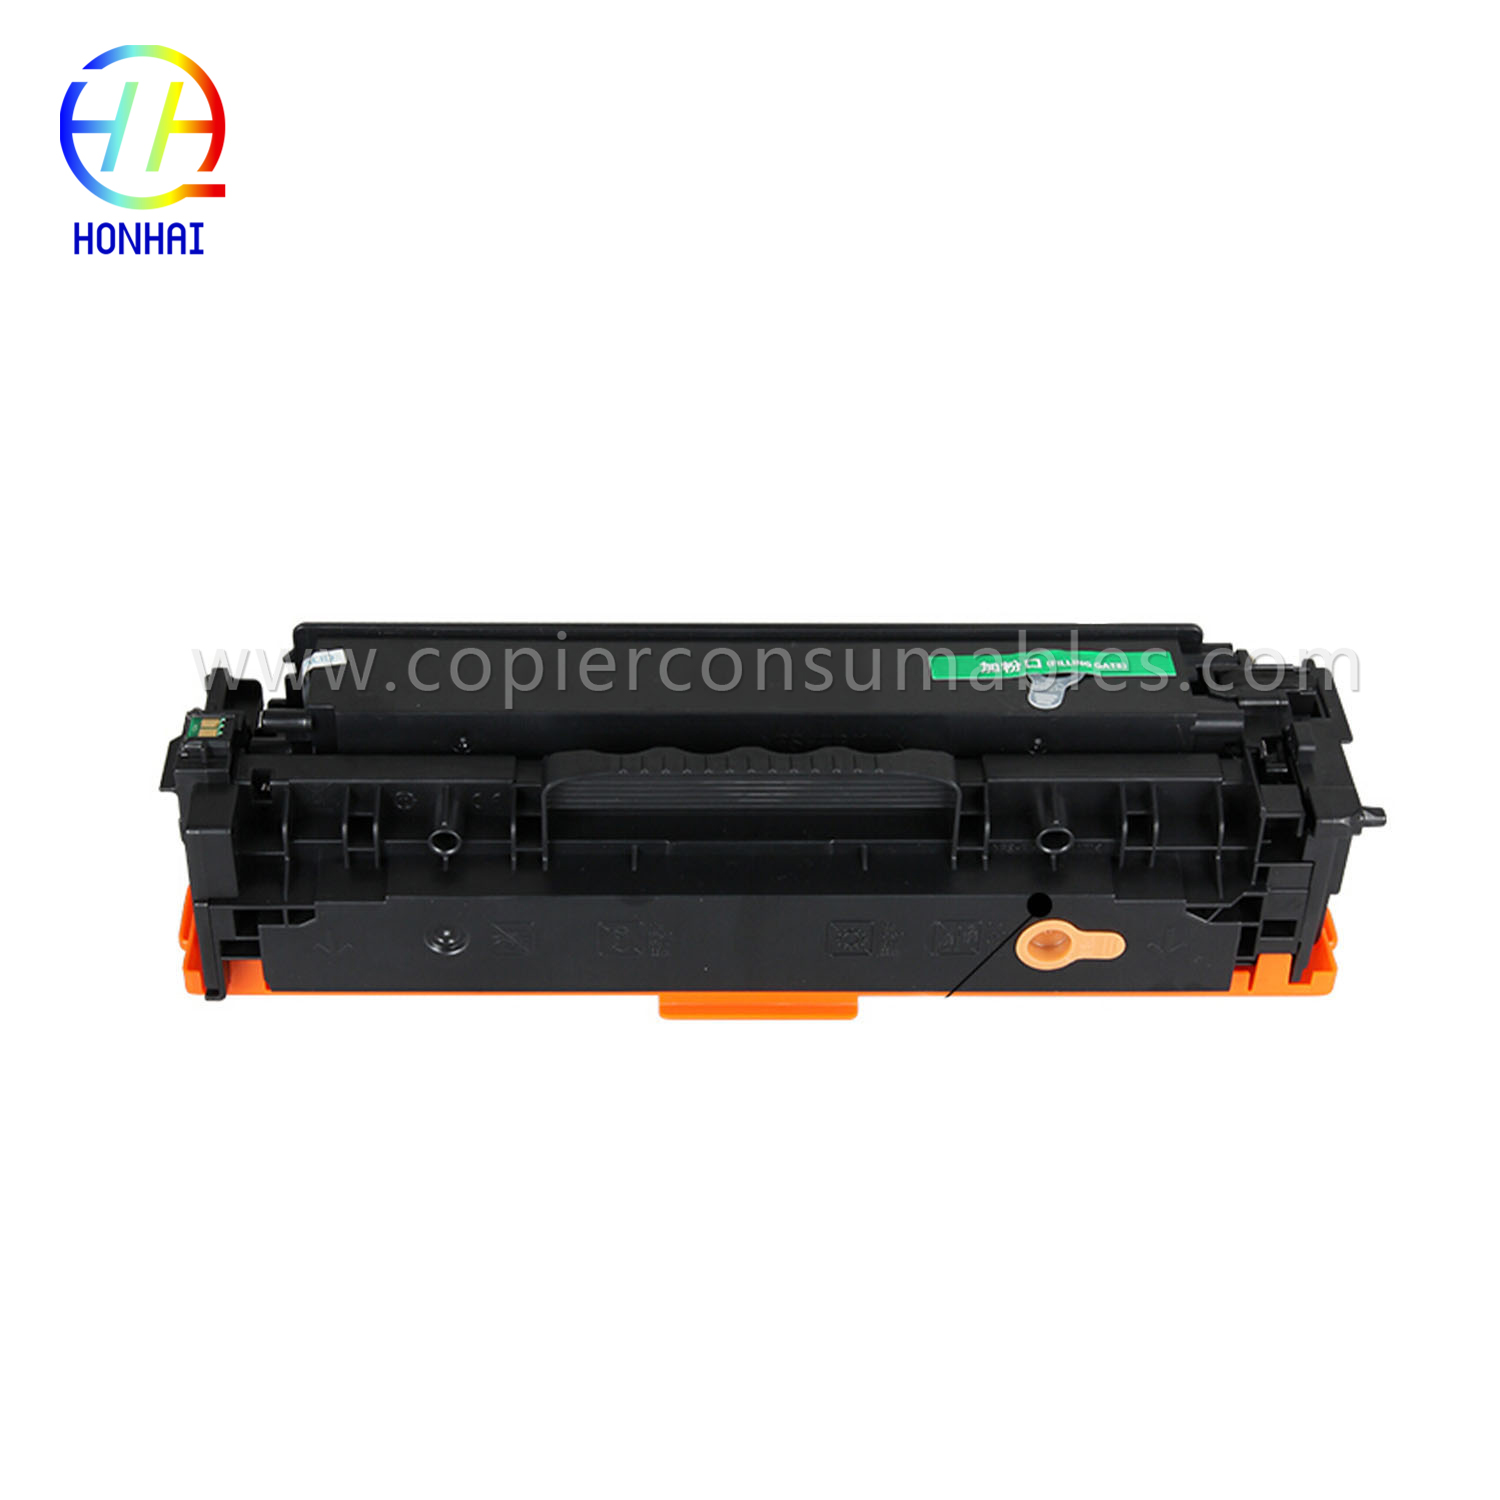 ტონერის კარტრიჯი HP Laserjet PRO 400 Color Mfp M451nw M451DN M451dw PRO 300 Color Mfp M375nw (CE410A) 拷贝